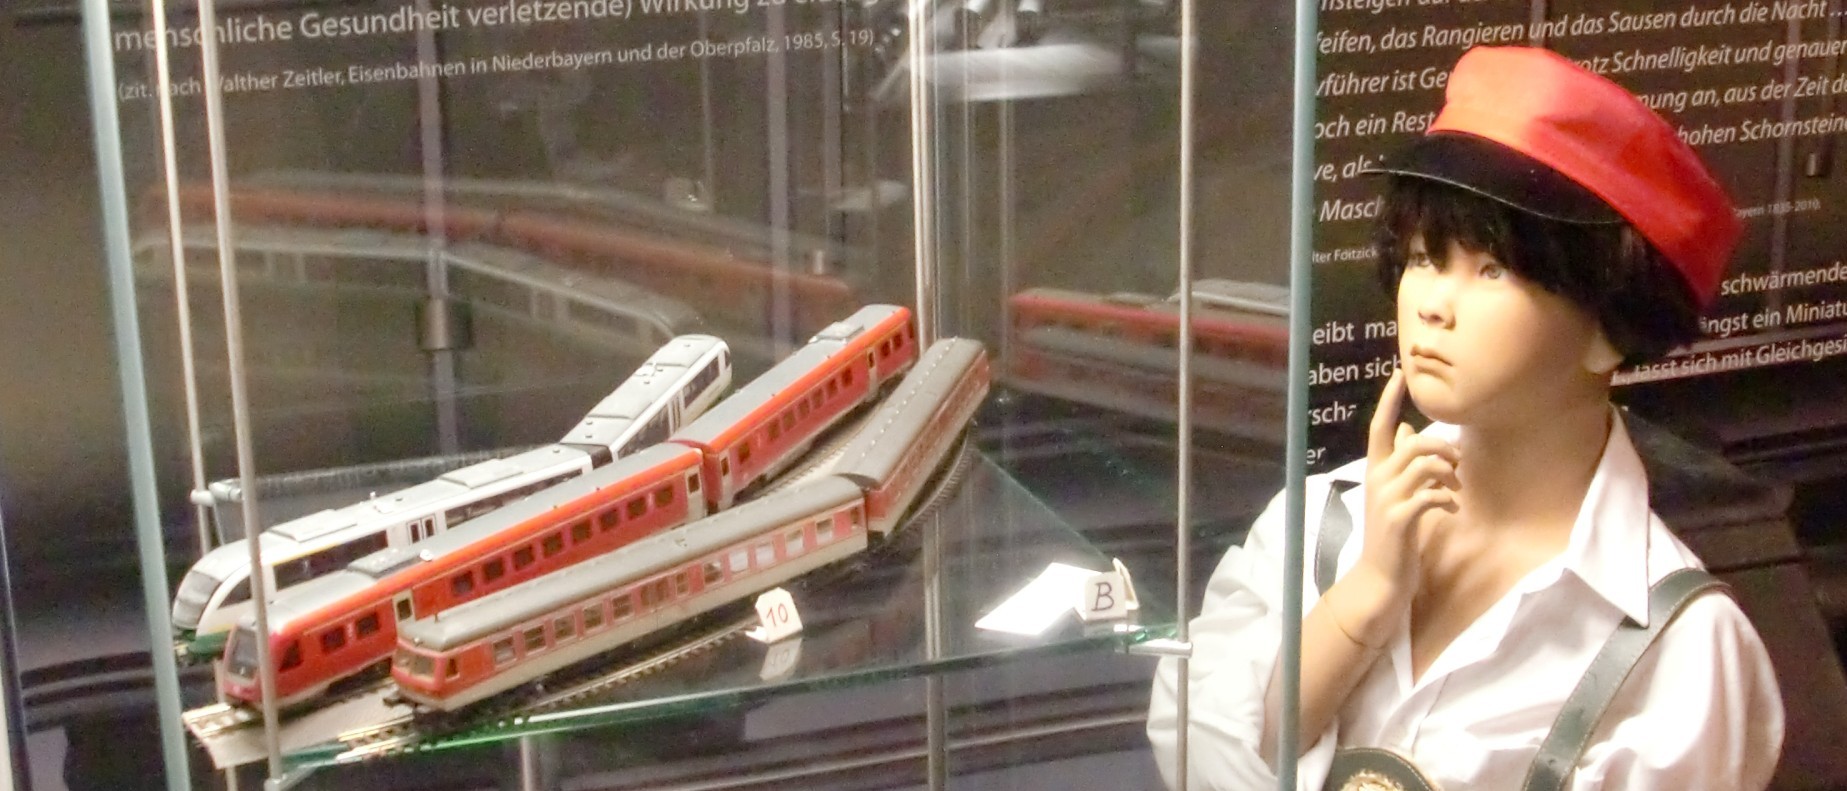 Das Foto zeigt einen Ausschnitt der Ausstellung &quot;150 Jahre Eisenbahn&quot;. Es ist eine kindliche Puppe mit Schaffnermütze zu sehen, die eine Vitrine mit Modelleisenbahnzügen betrachtet.